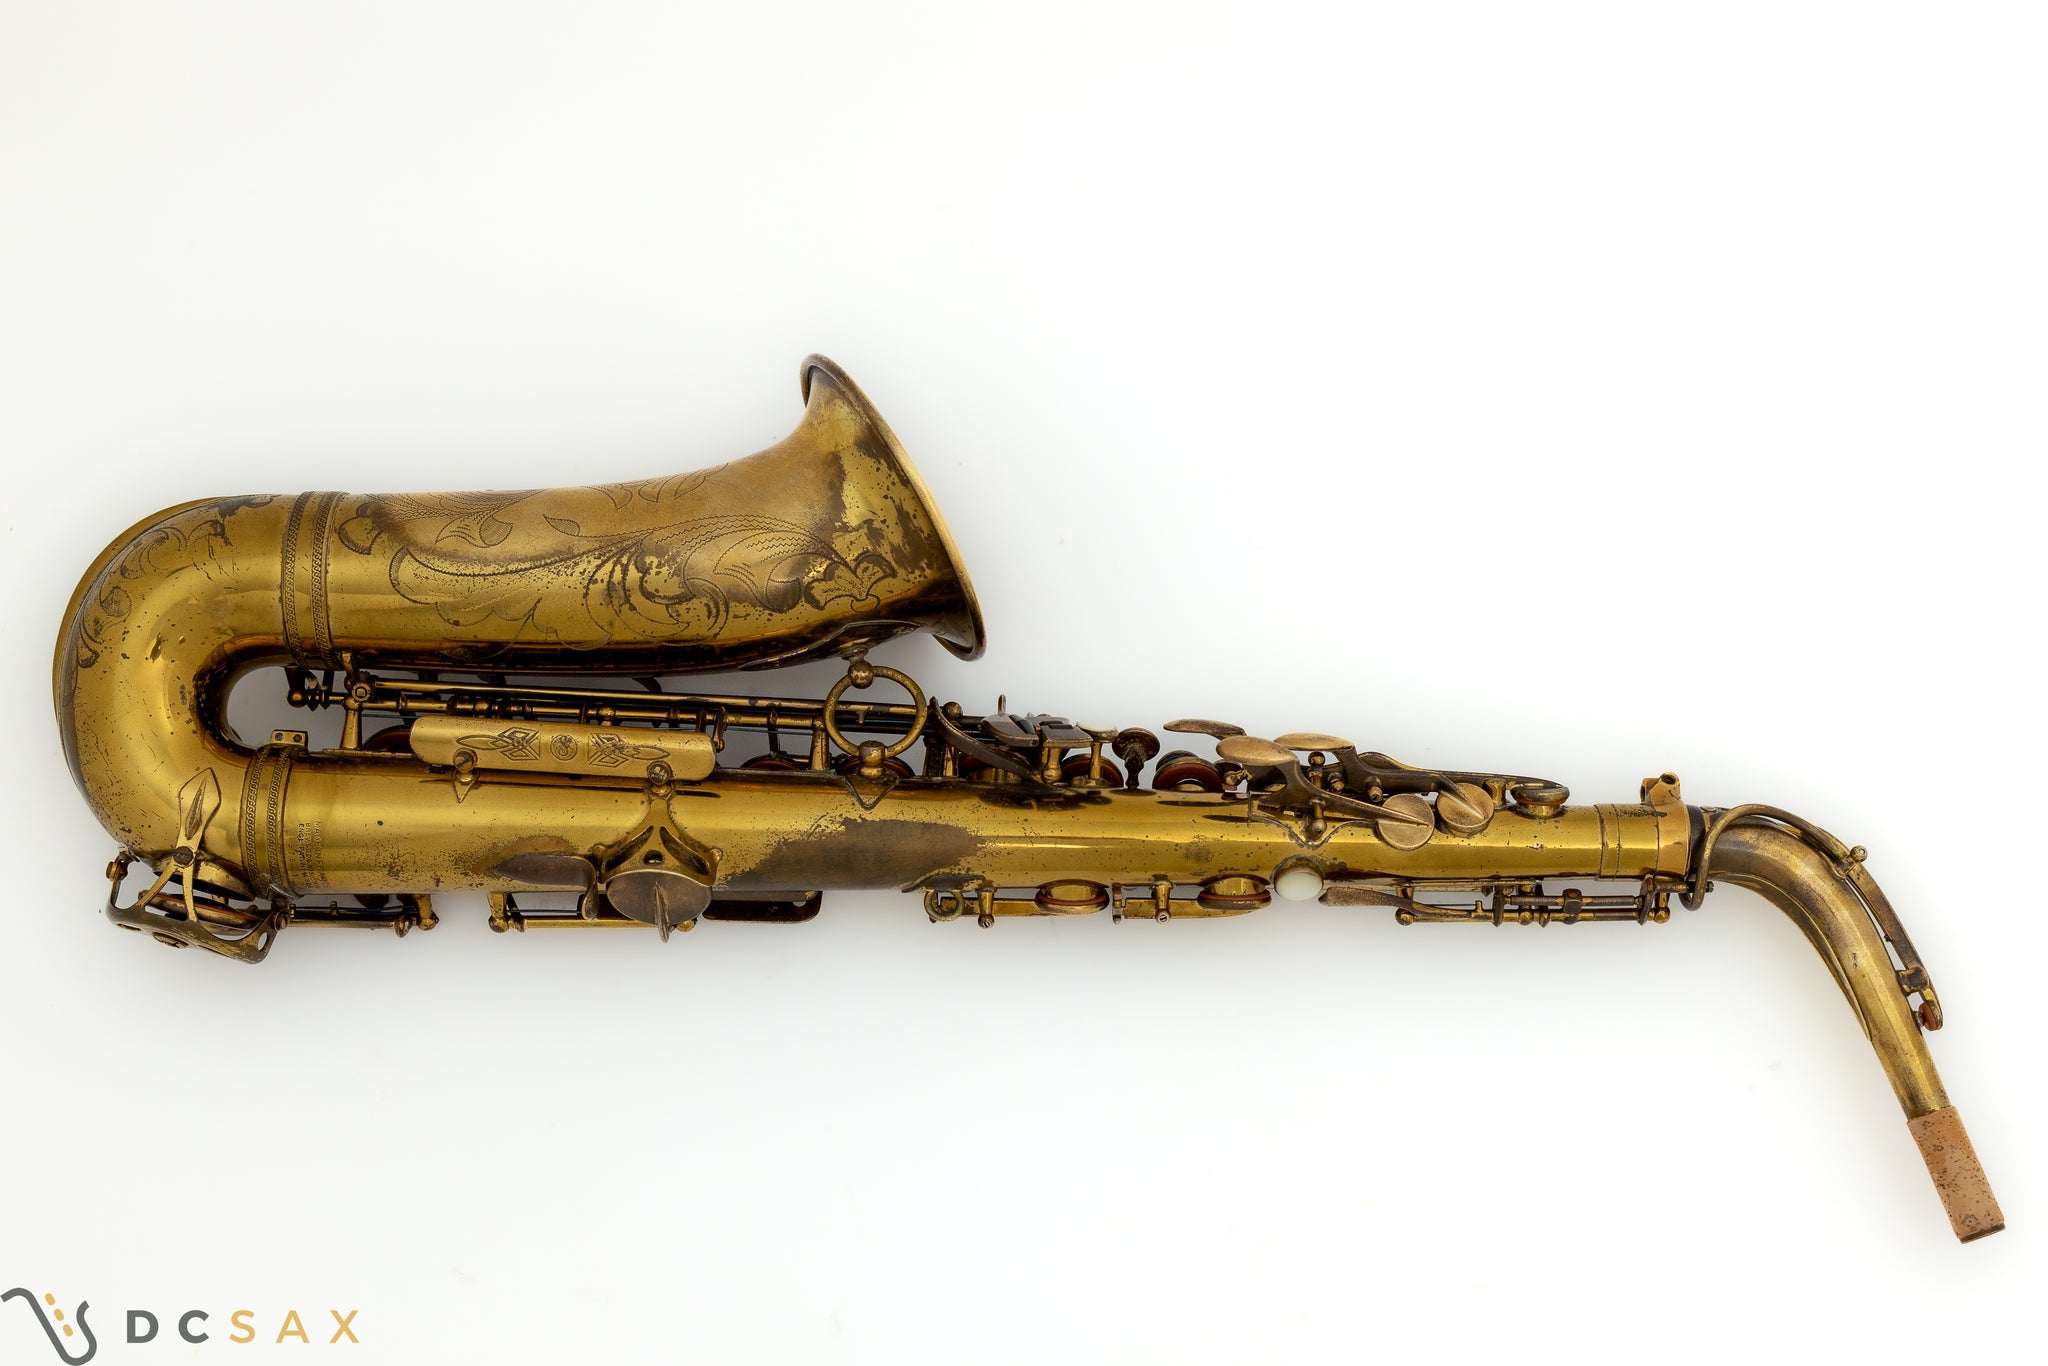 1947 37,xxx Selmer Super Balanced Action SBA Alto Saxophone, Video, Overhaul